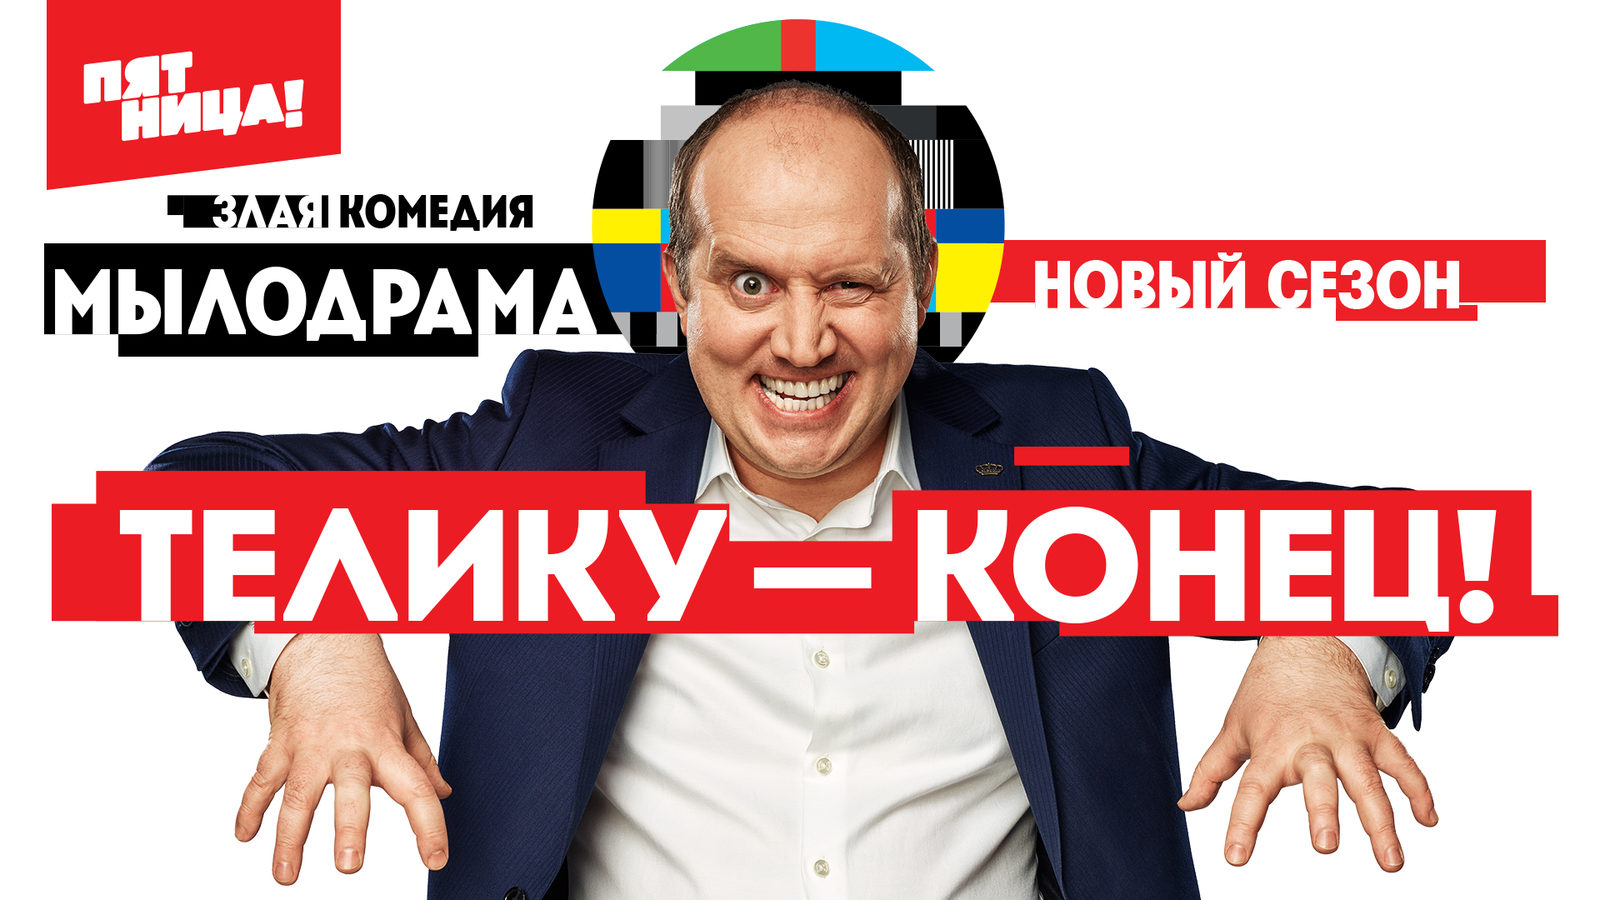 Сергей Бурунов возвращается к роли гендиректора телеканала ТСВ